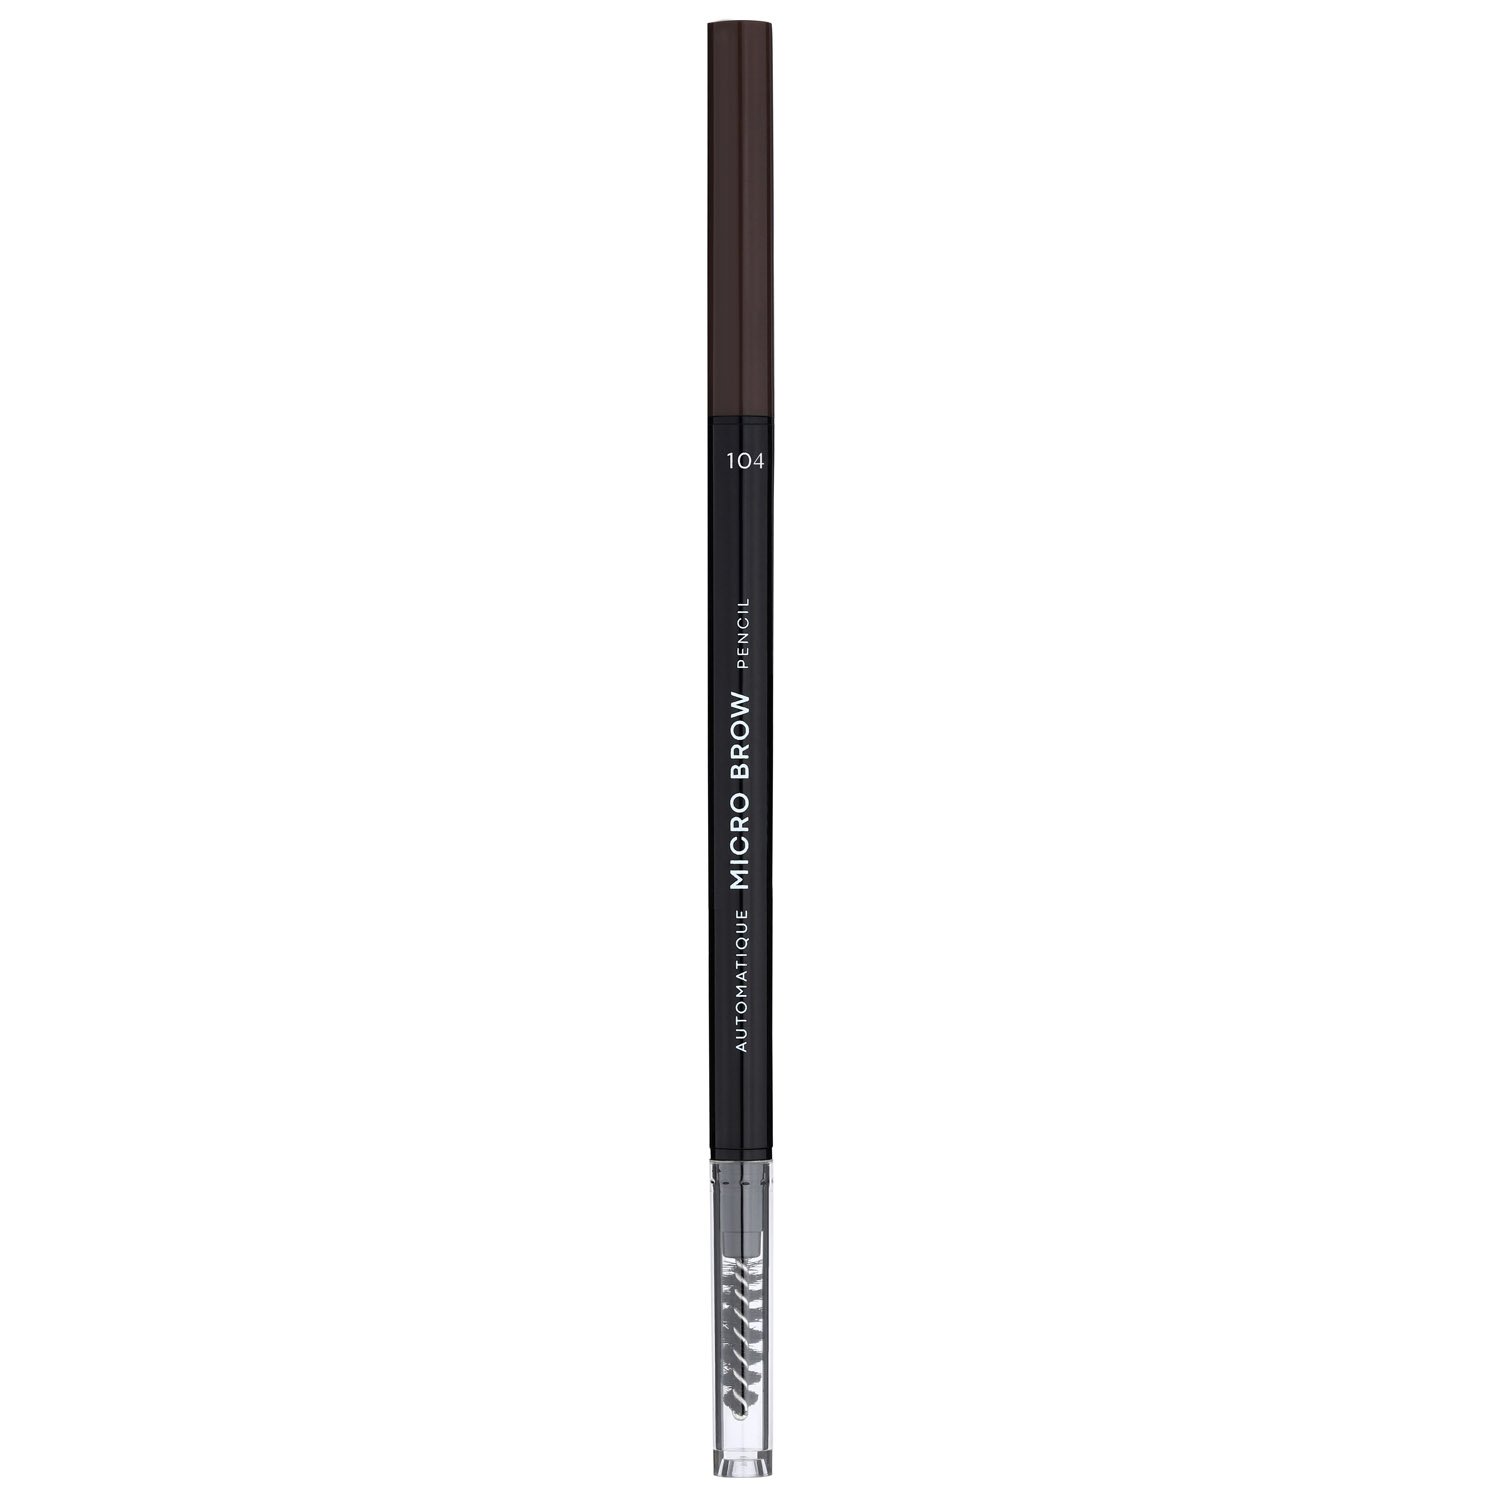 Олівець для брів LN Professional Micro Brow Pencil тон 104, 0.12 г - фото 1